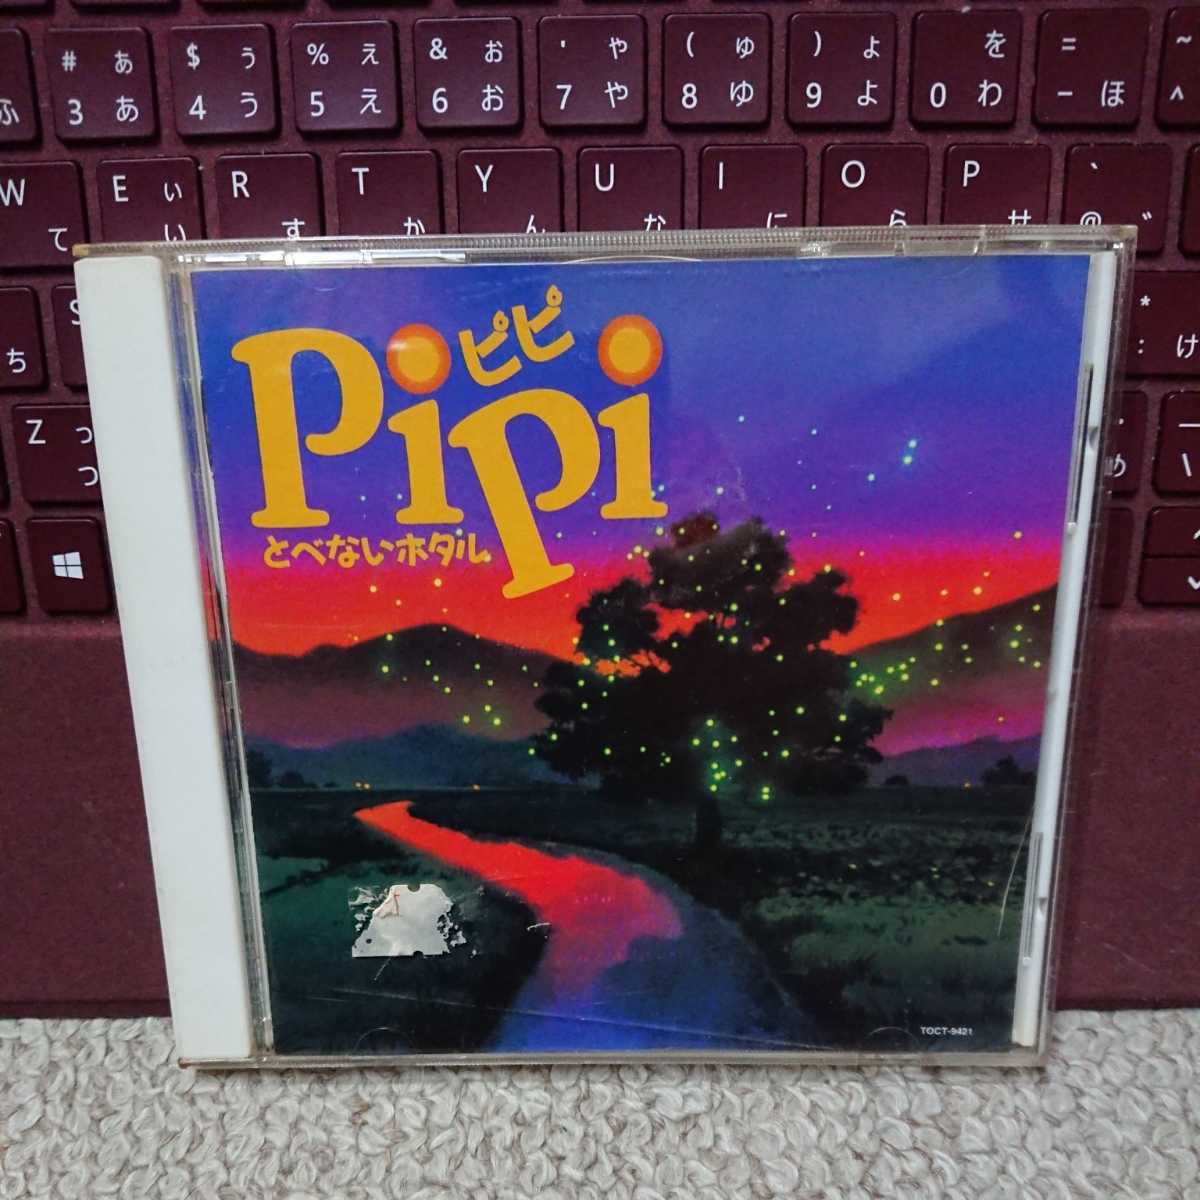 長編アニメーション映画 「PIPI ピピ とぺないホタル 」 オリジナルサウンドトラック。プロモ用見本盤です。ブックレットあり。_画像1